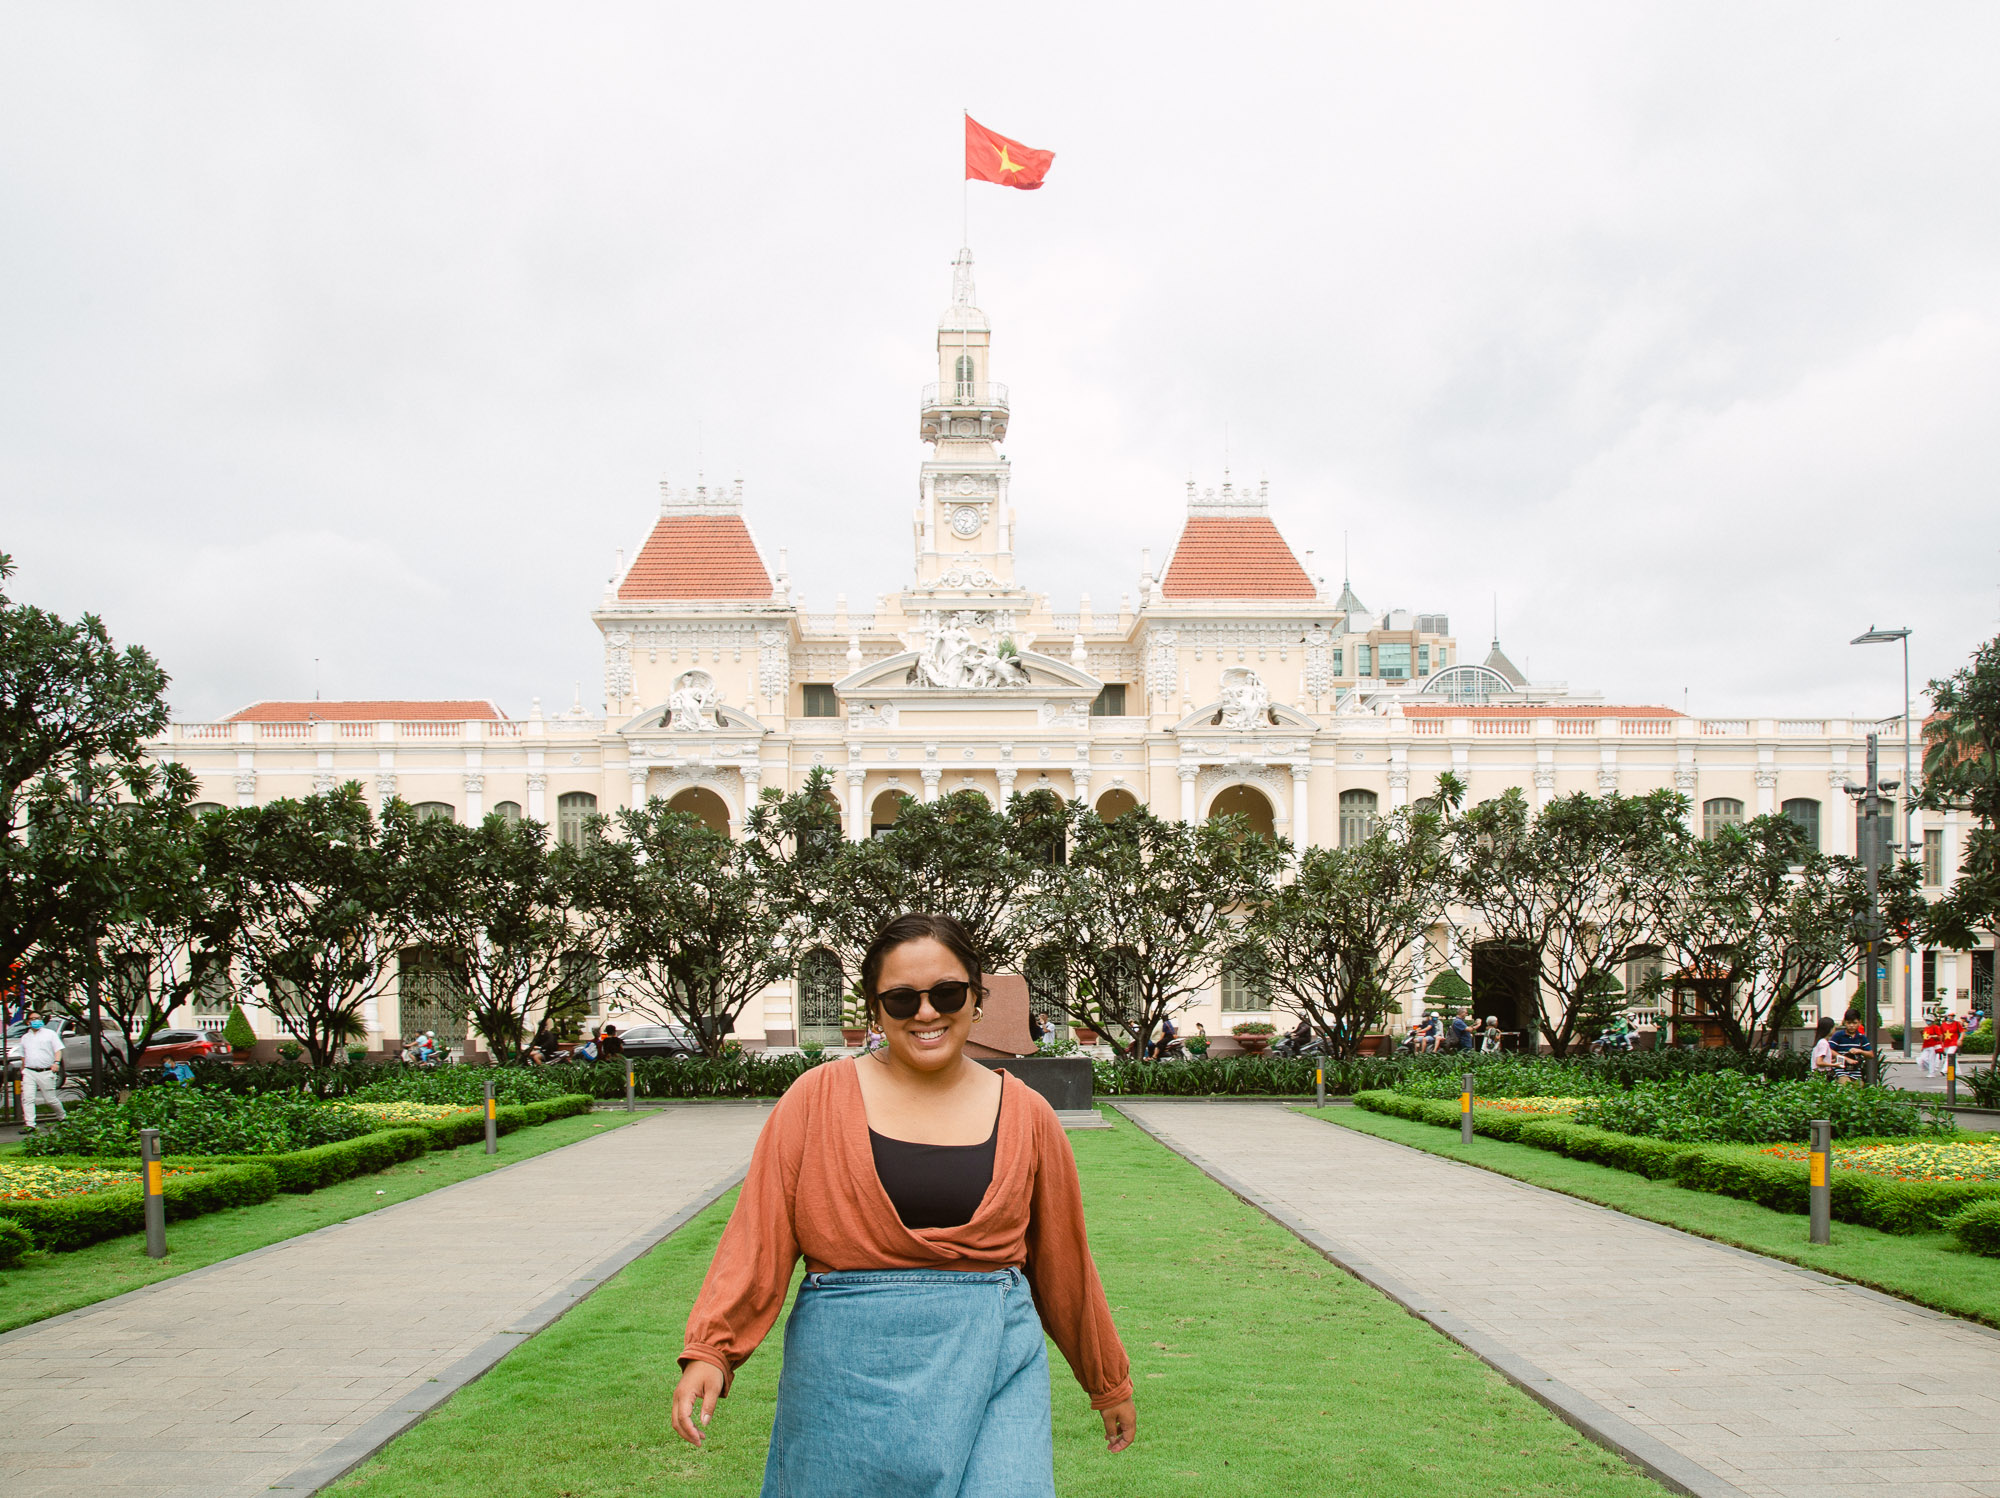 Reasons Why You Should Visit Ho Chi Minh City